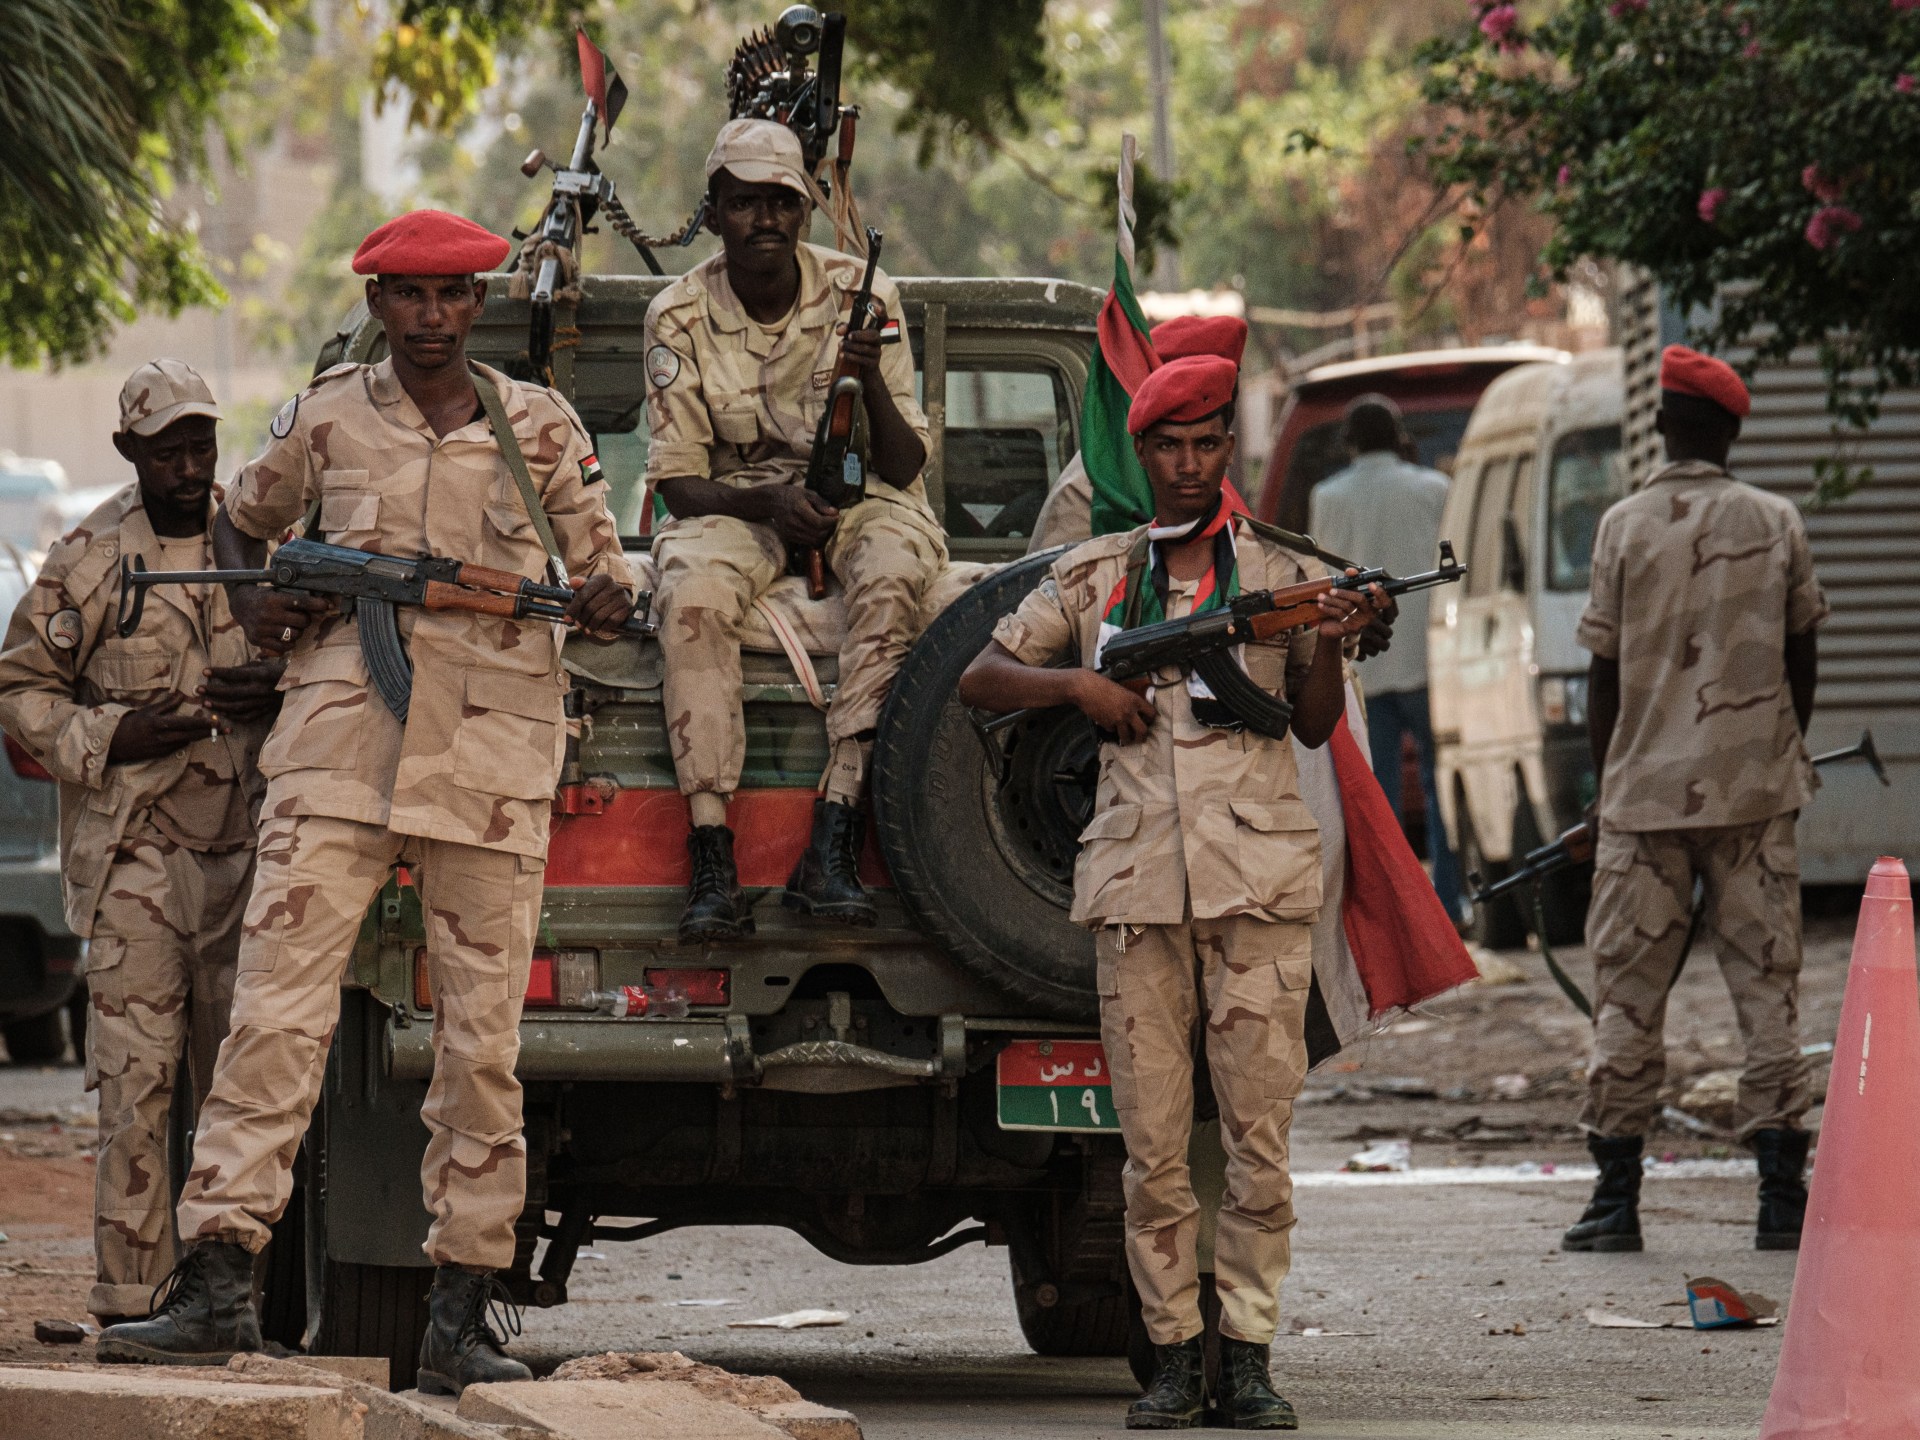 قصف متبادل بين الجيش والدعم السريع على ضفتي النيل في الخرطوم | أخبار – البوكس نيوز